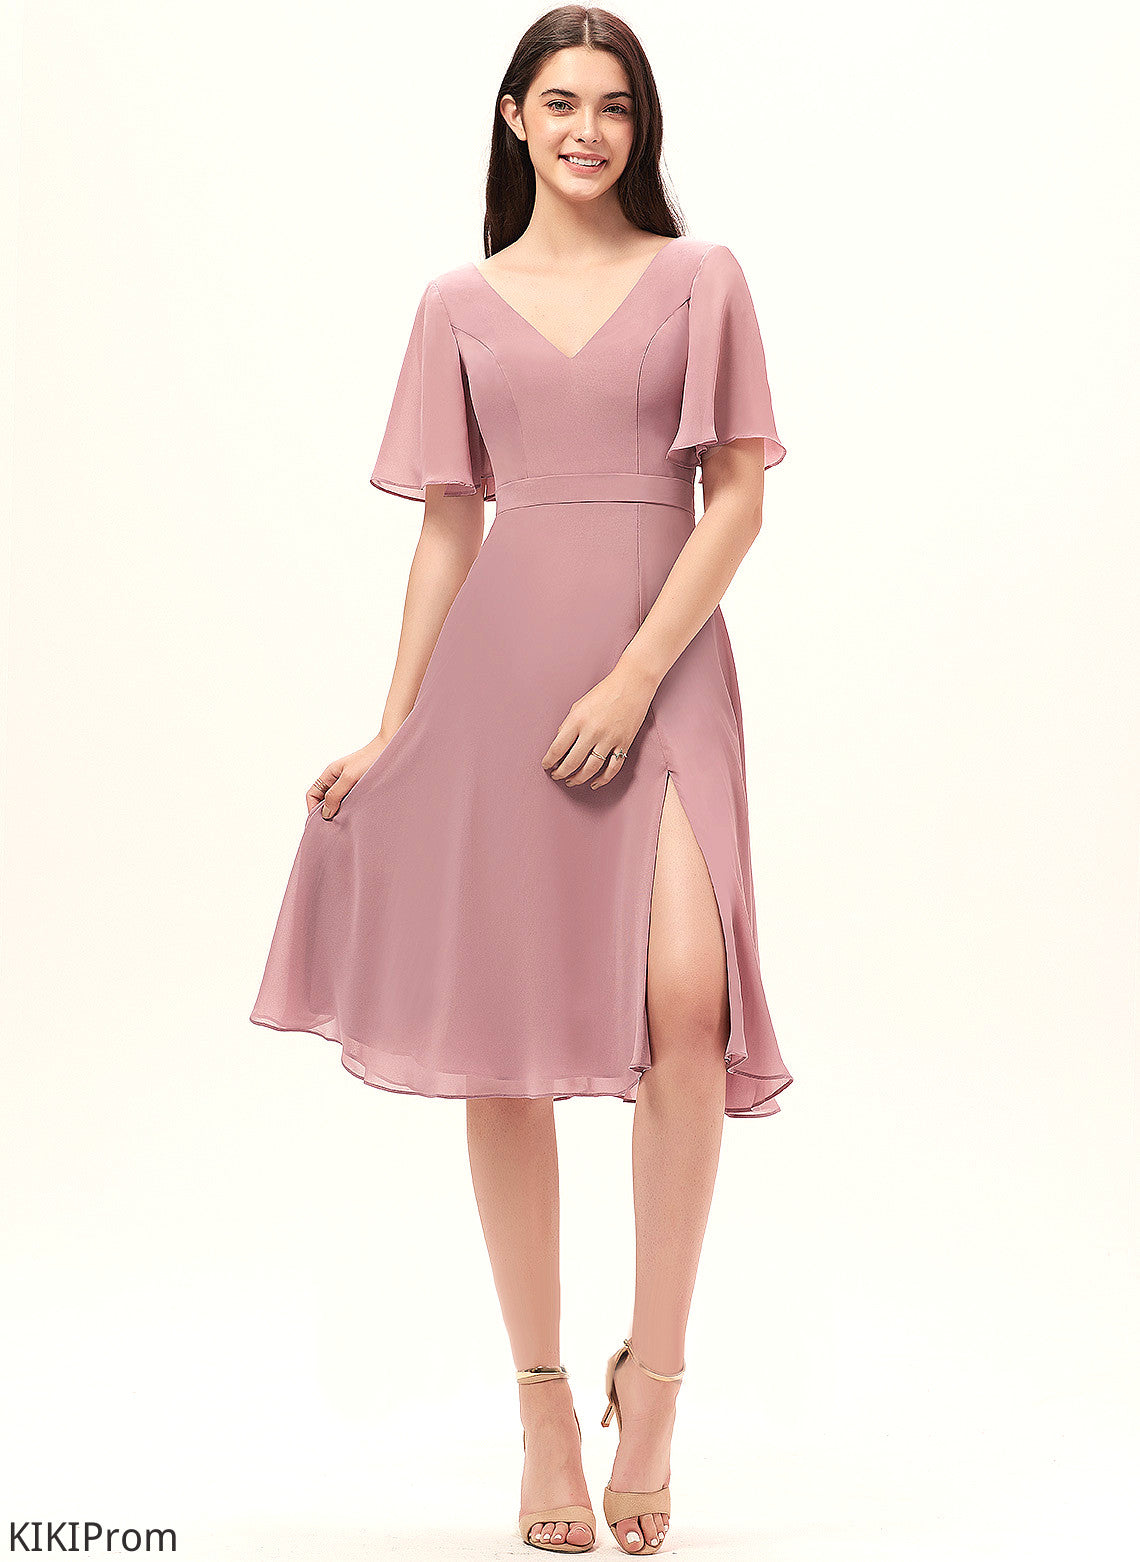 Straps&Sleeves A-Line Length V-neck Neckline Knee-Length Fabric Silhouette Aimee A-Line/Princess Natural Waist Sleeveless Bridesmaid Dresses